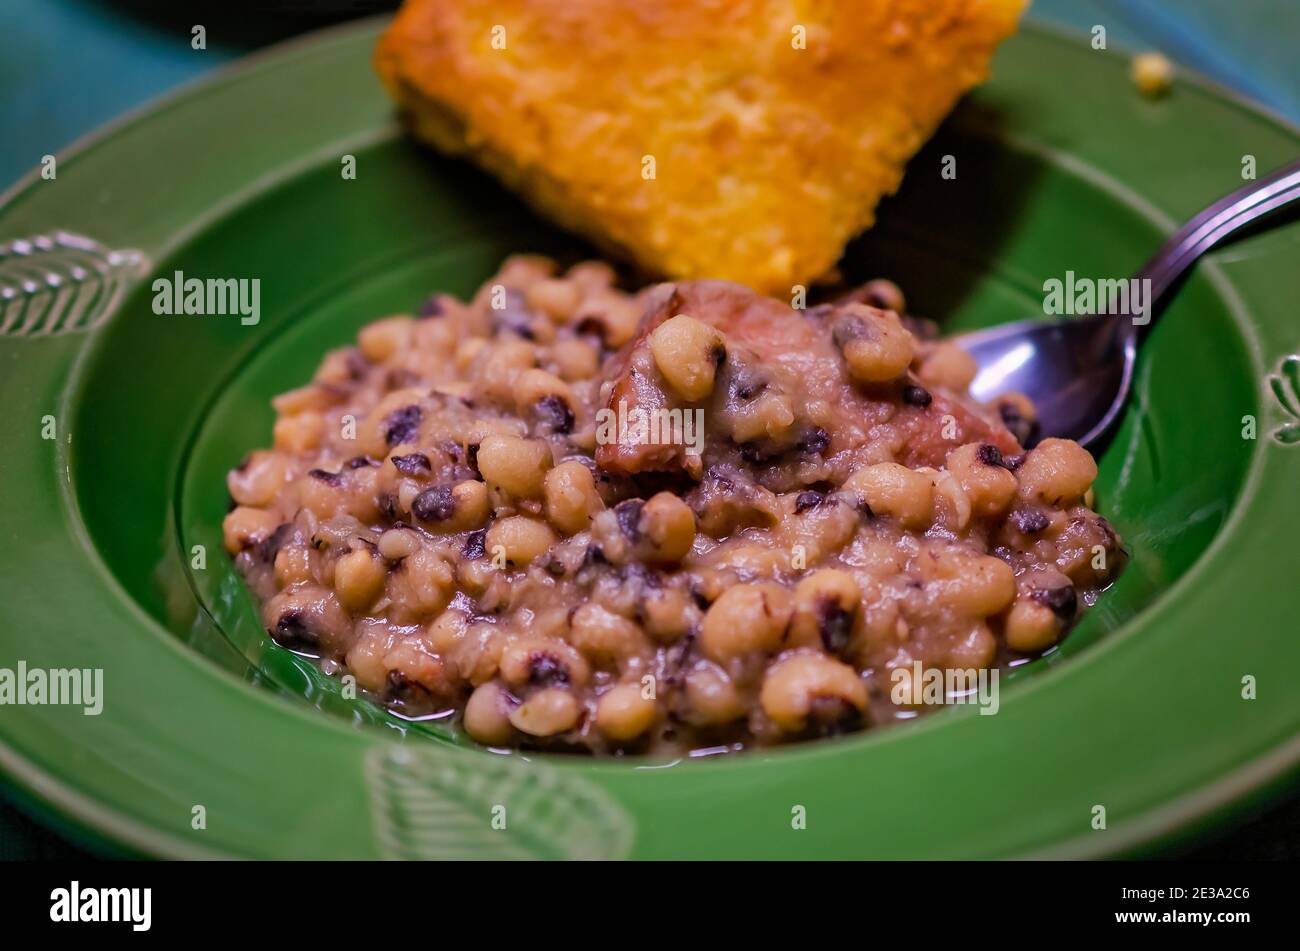 Los guisantes de ojos negros, también conocidos como John de Hoppin, se sirven con pan de maíz como una cena tradicional del día de año Nuevo en el sur de los Estados Unidos. Foto de stock